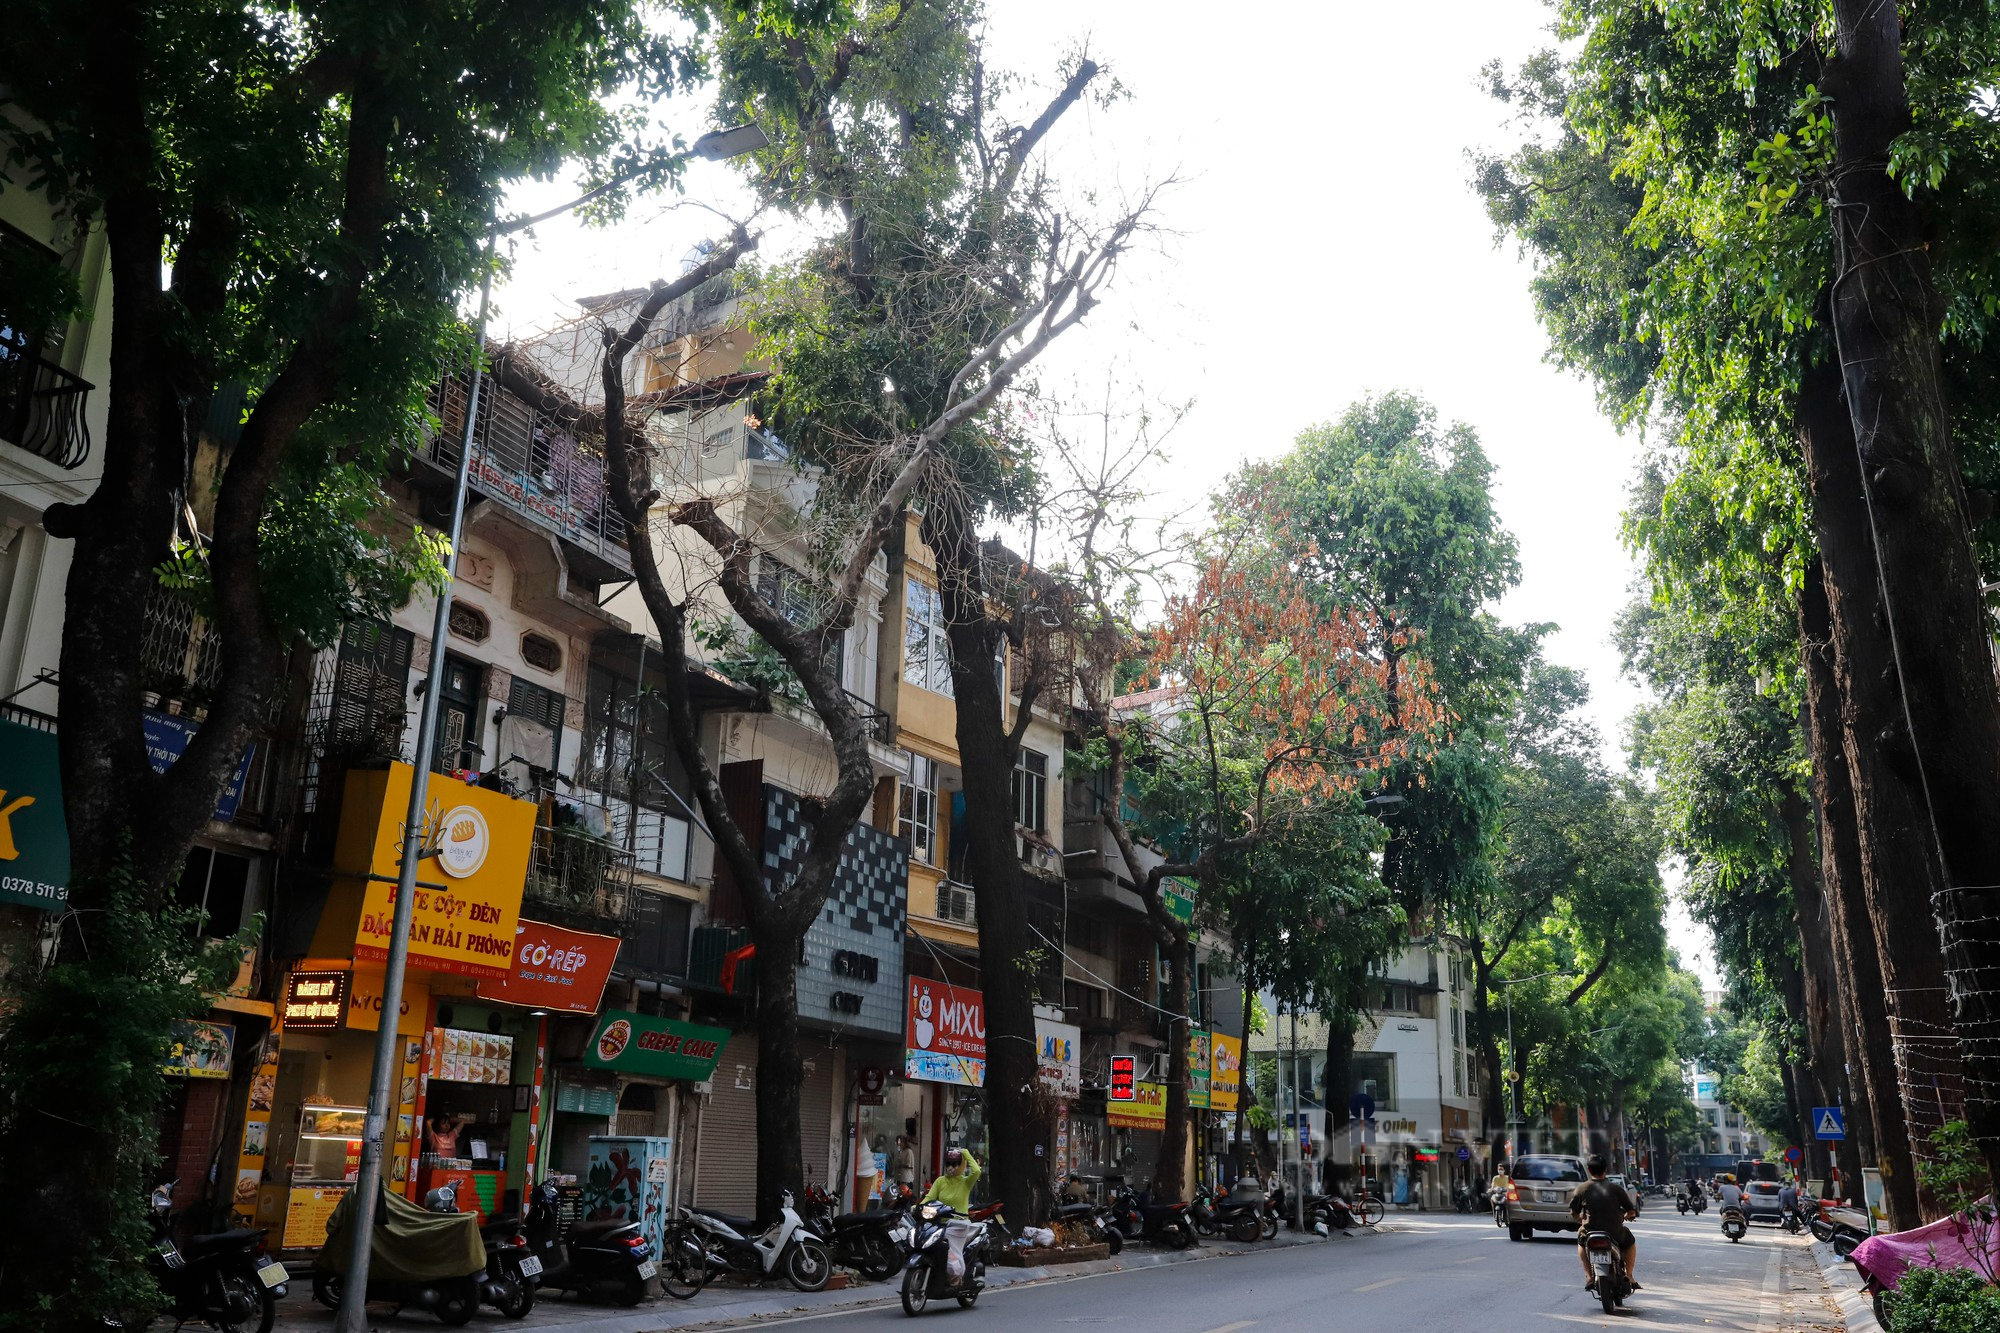 Nhiều cây cổ thụ chết khô trên các tuyến phố Hà Nội, nguy cơ đổ khi giông bão - Ảnh 1.